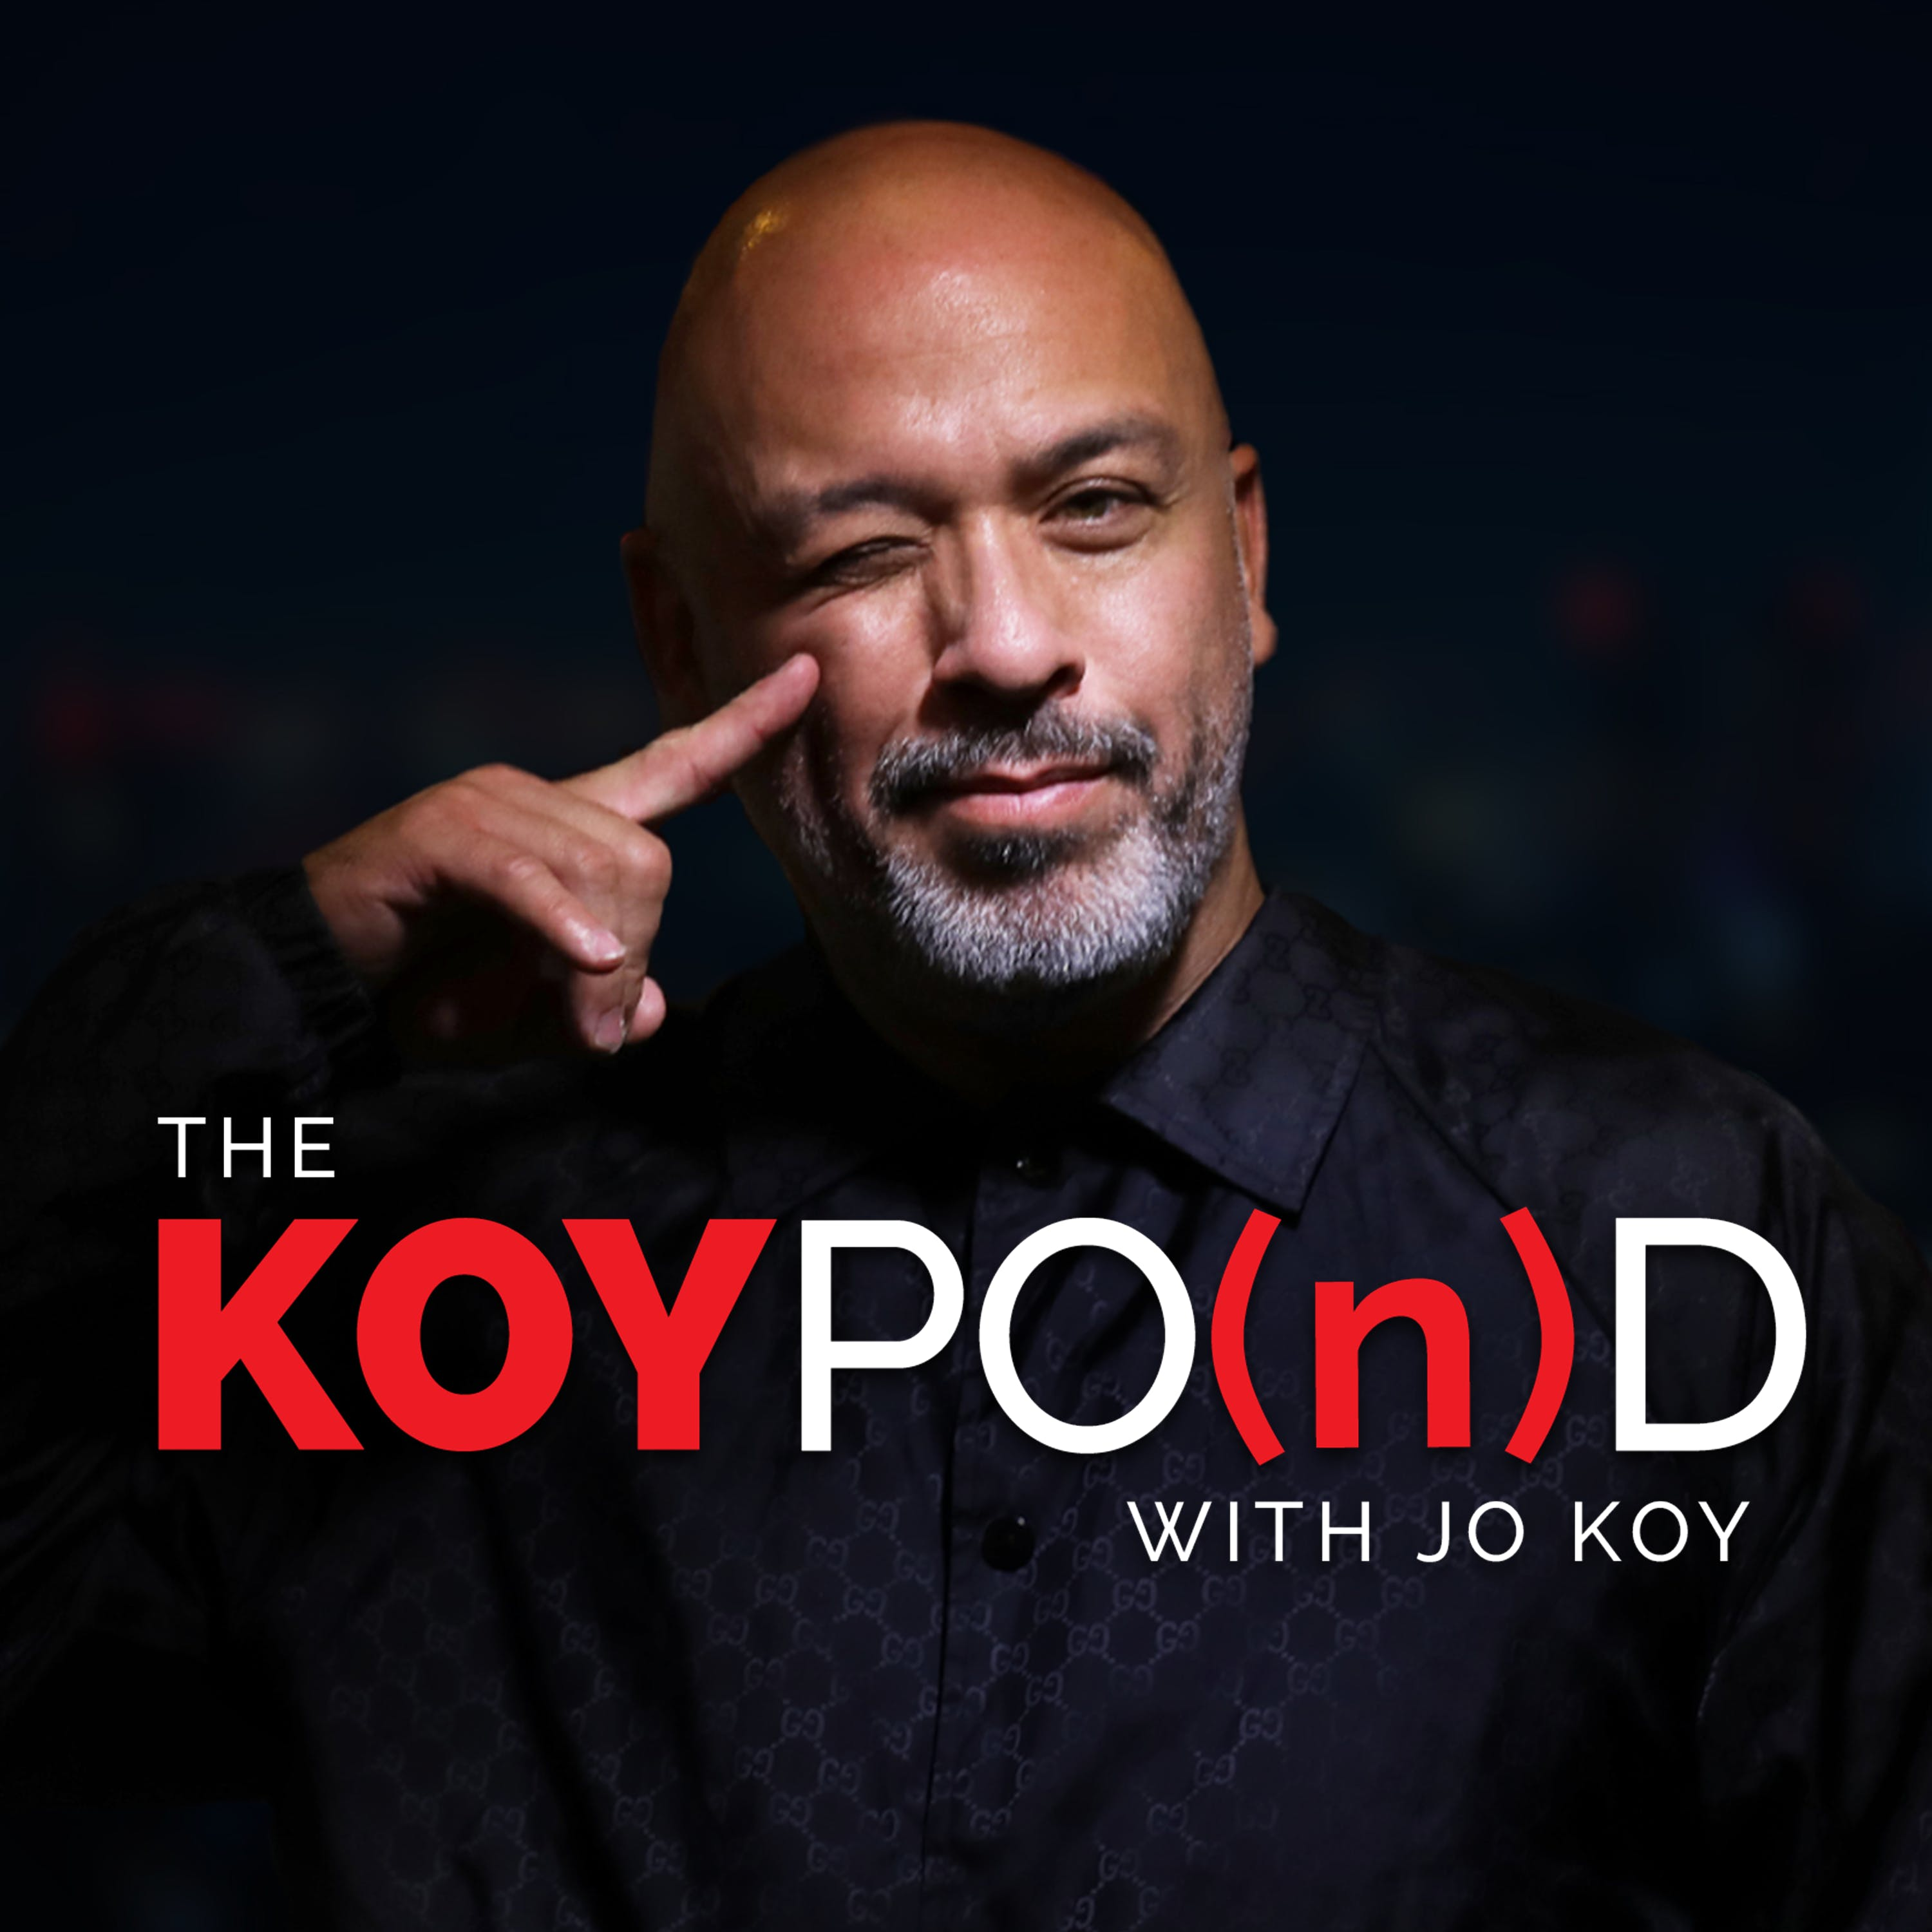 The Koy Pond with Jo Koy